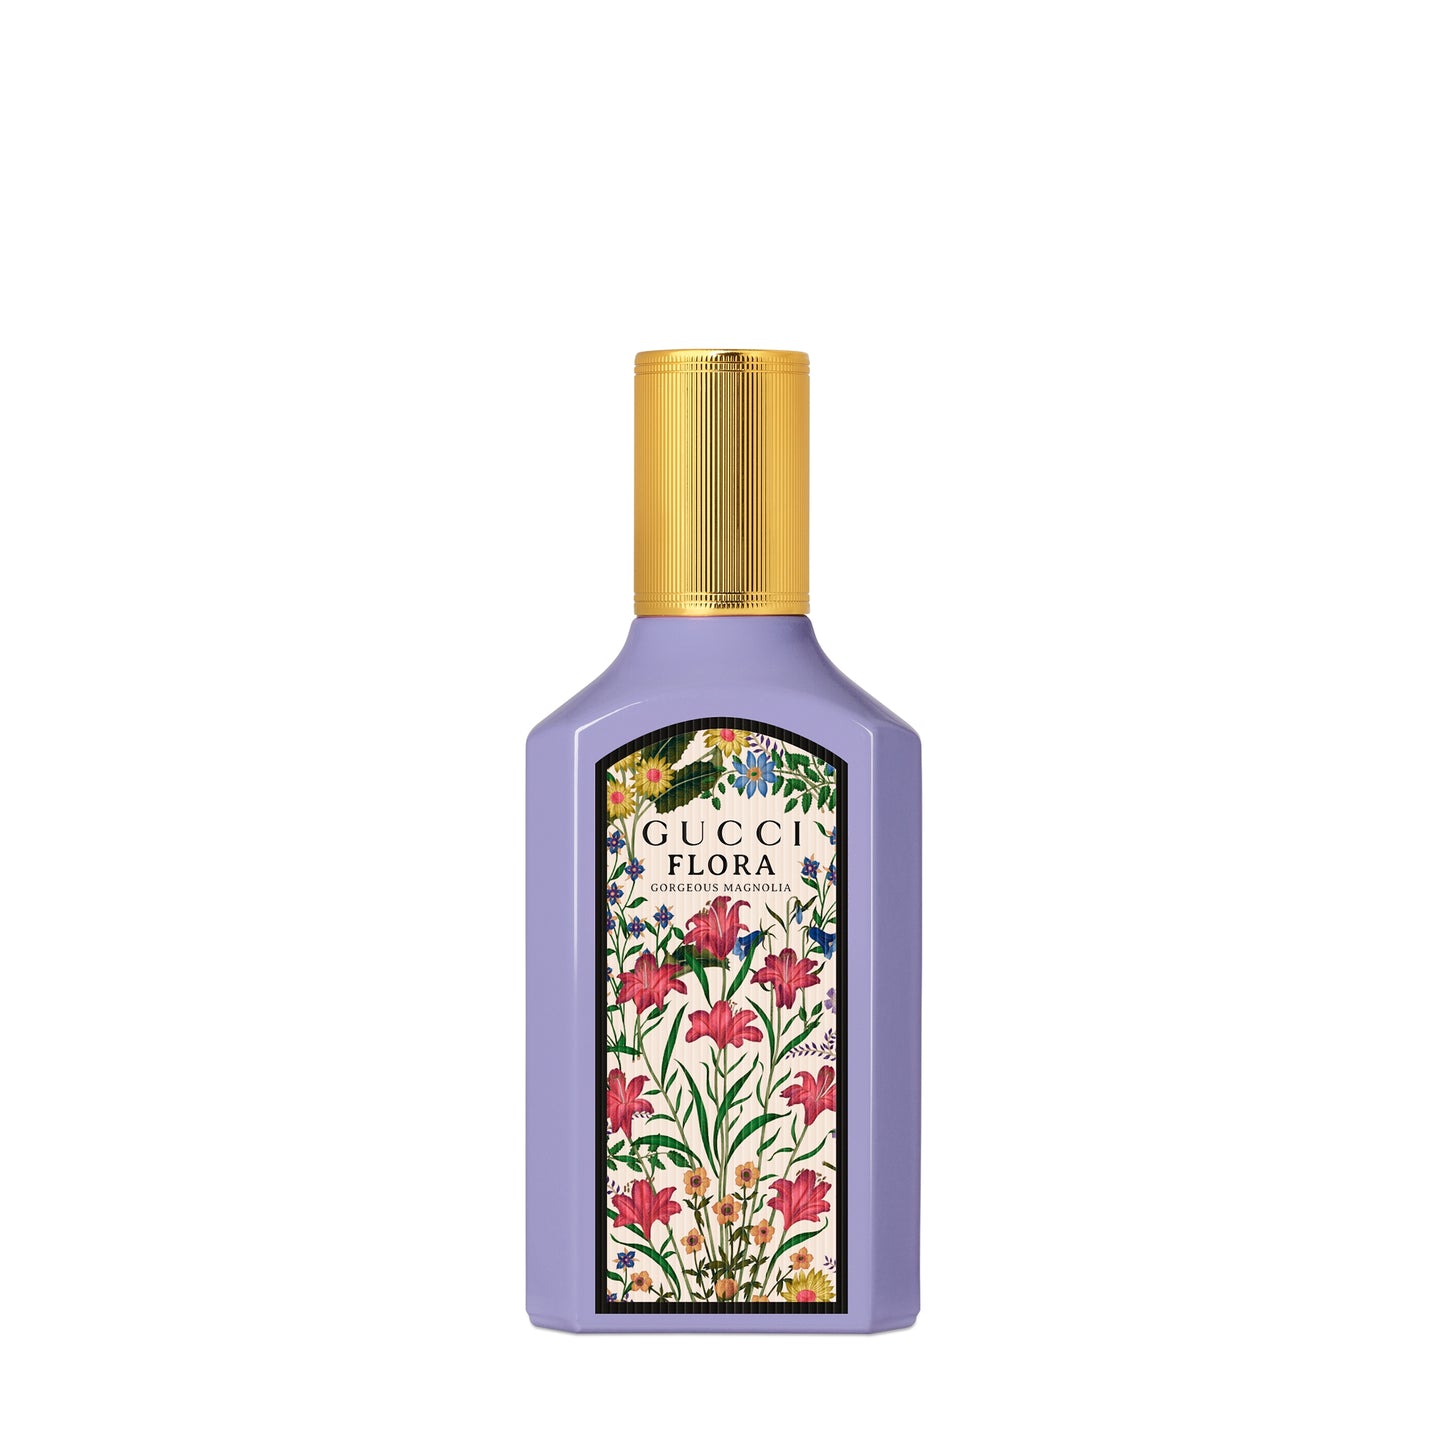 Gucci Flora Gorgeous Magnolia Eau de parfum 50 ML